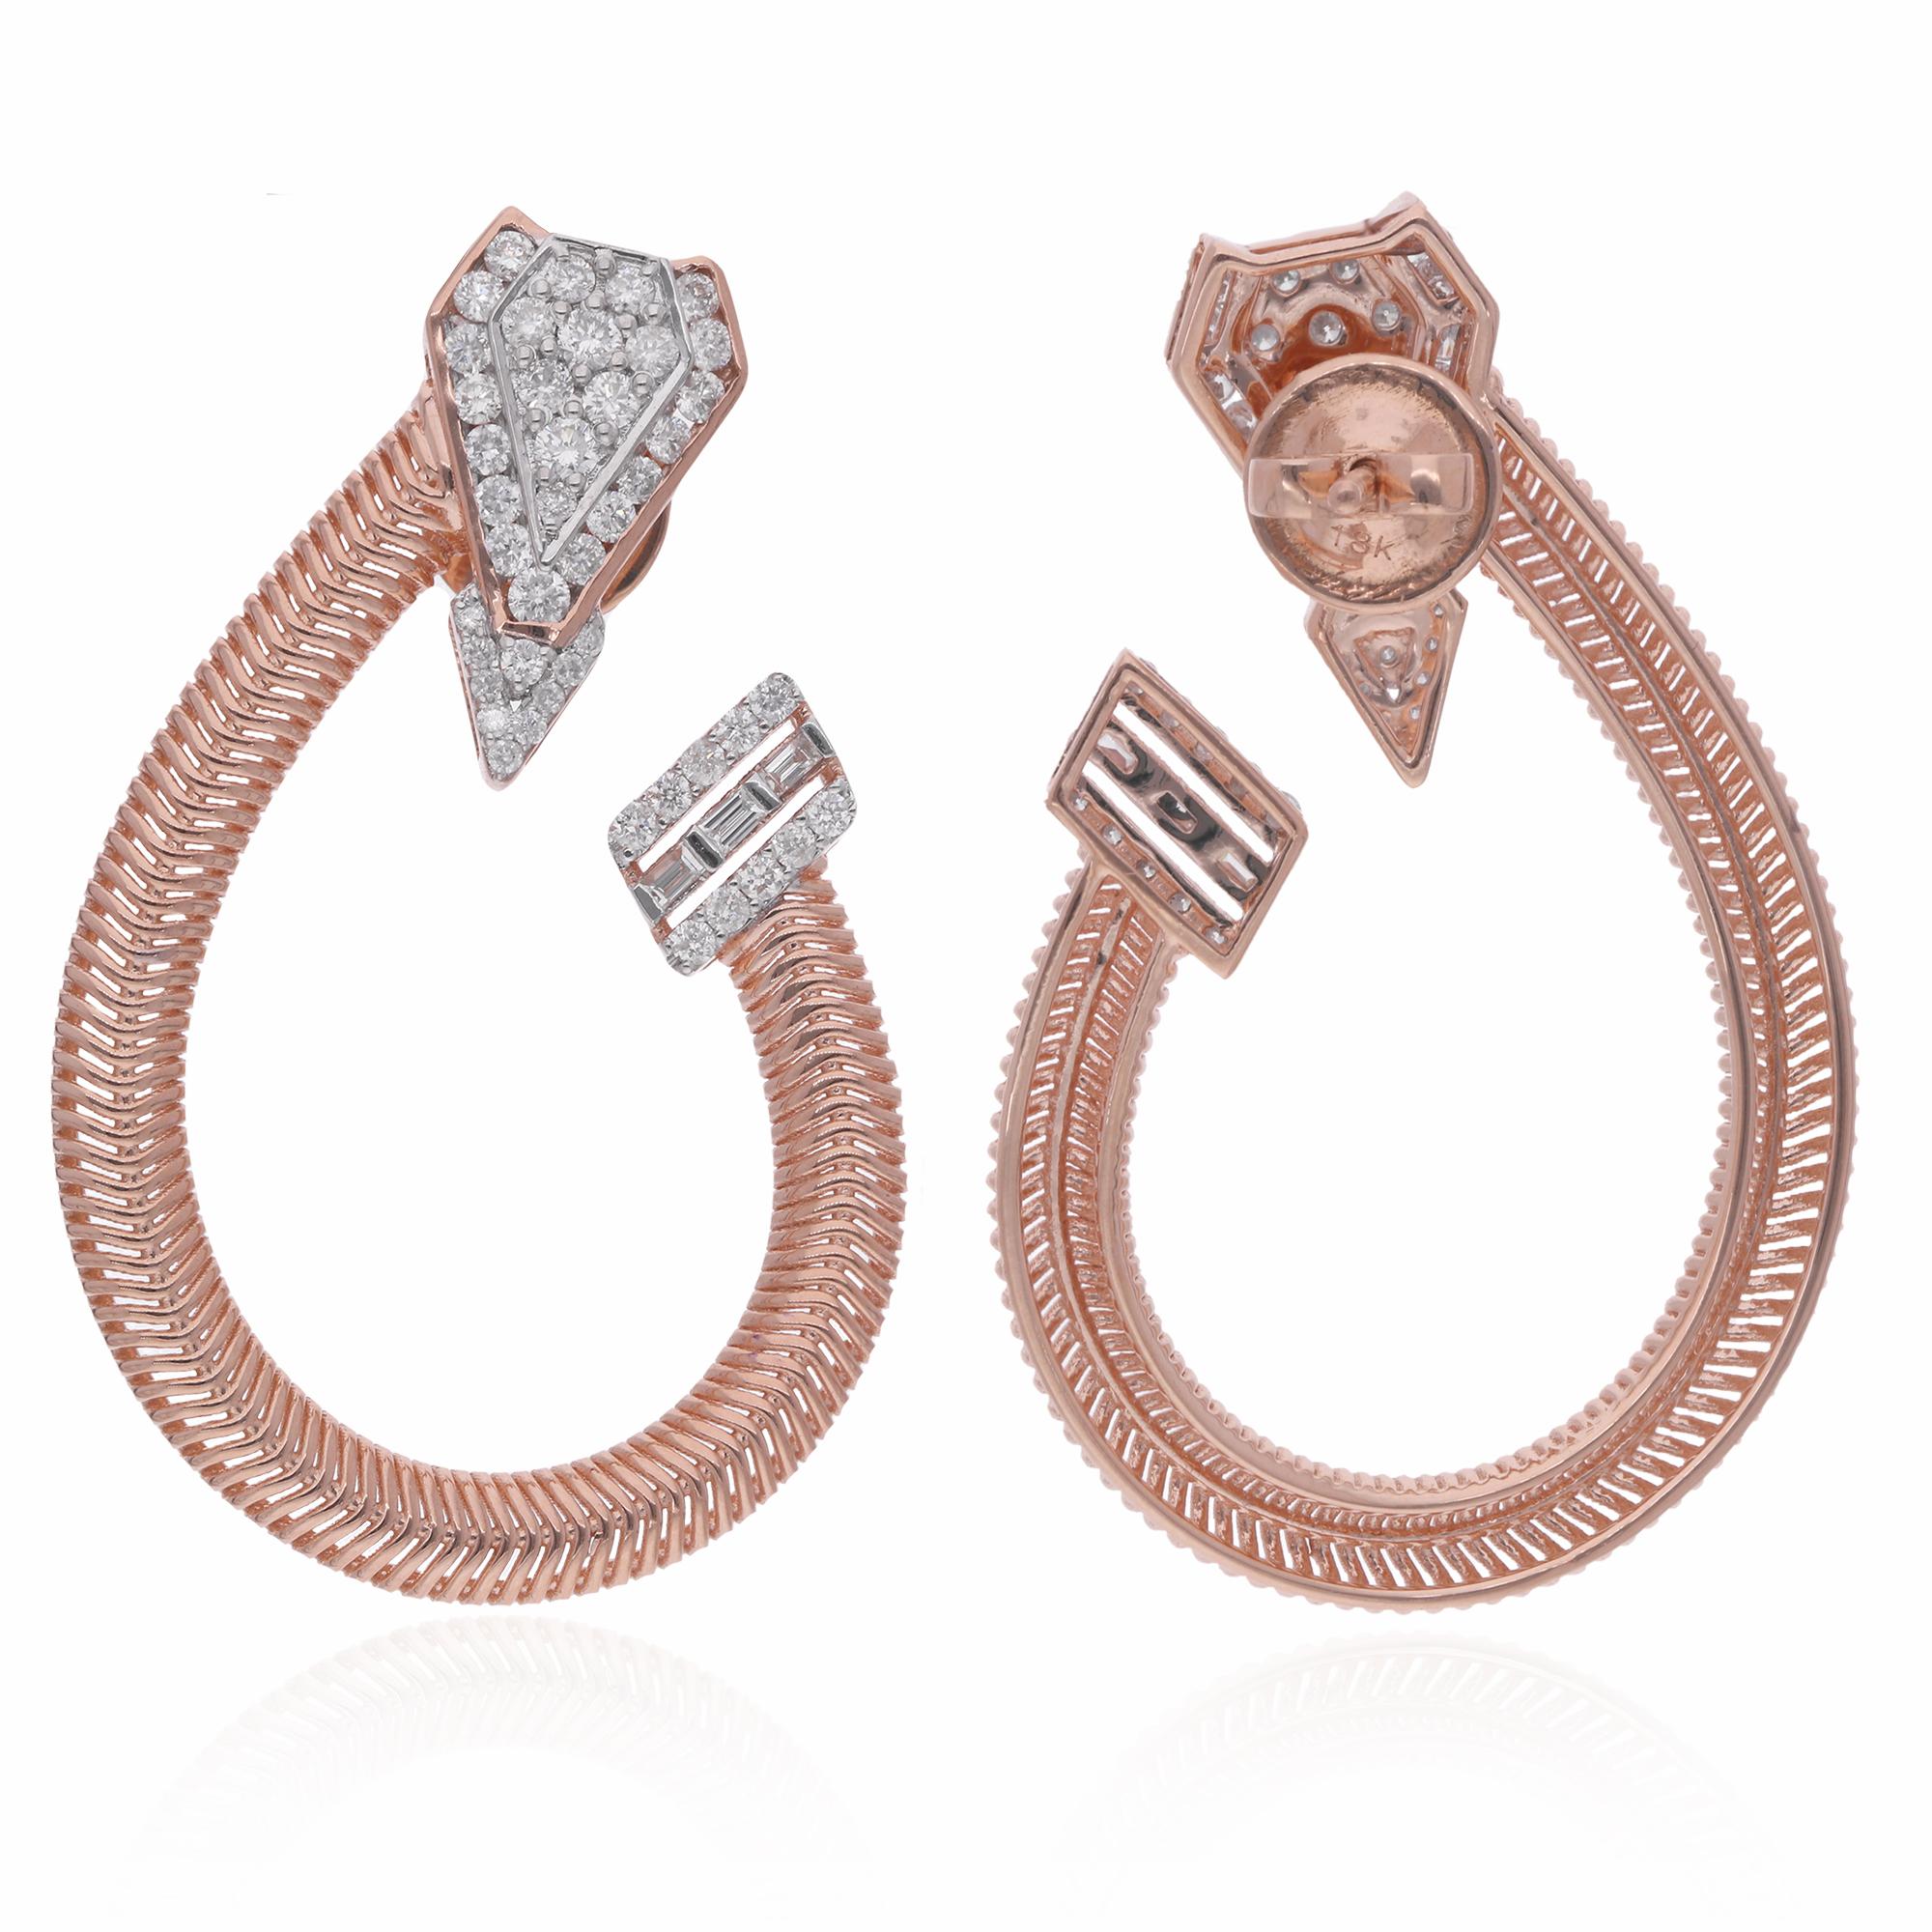 Erheben Sie Ihren Stil zu neuen Höhen mit der exquisiten Schönheit dieser natürlichen 1,07 Karat Baguette & Round Diamond Hoop Earrings, die sorgfältig in luxuriösem 18 Karat Roségold gefertigt sind. Diese atemberaubenden Ohrringe zelebrieren